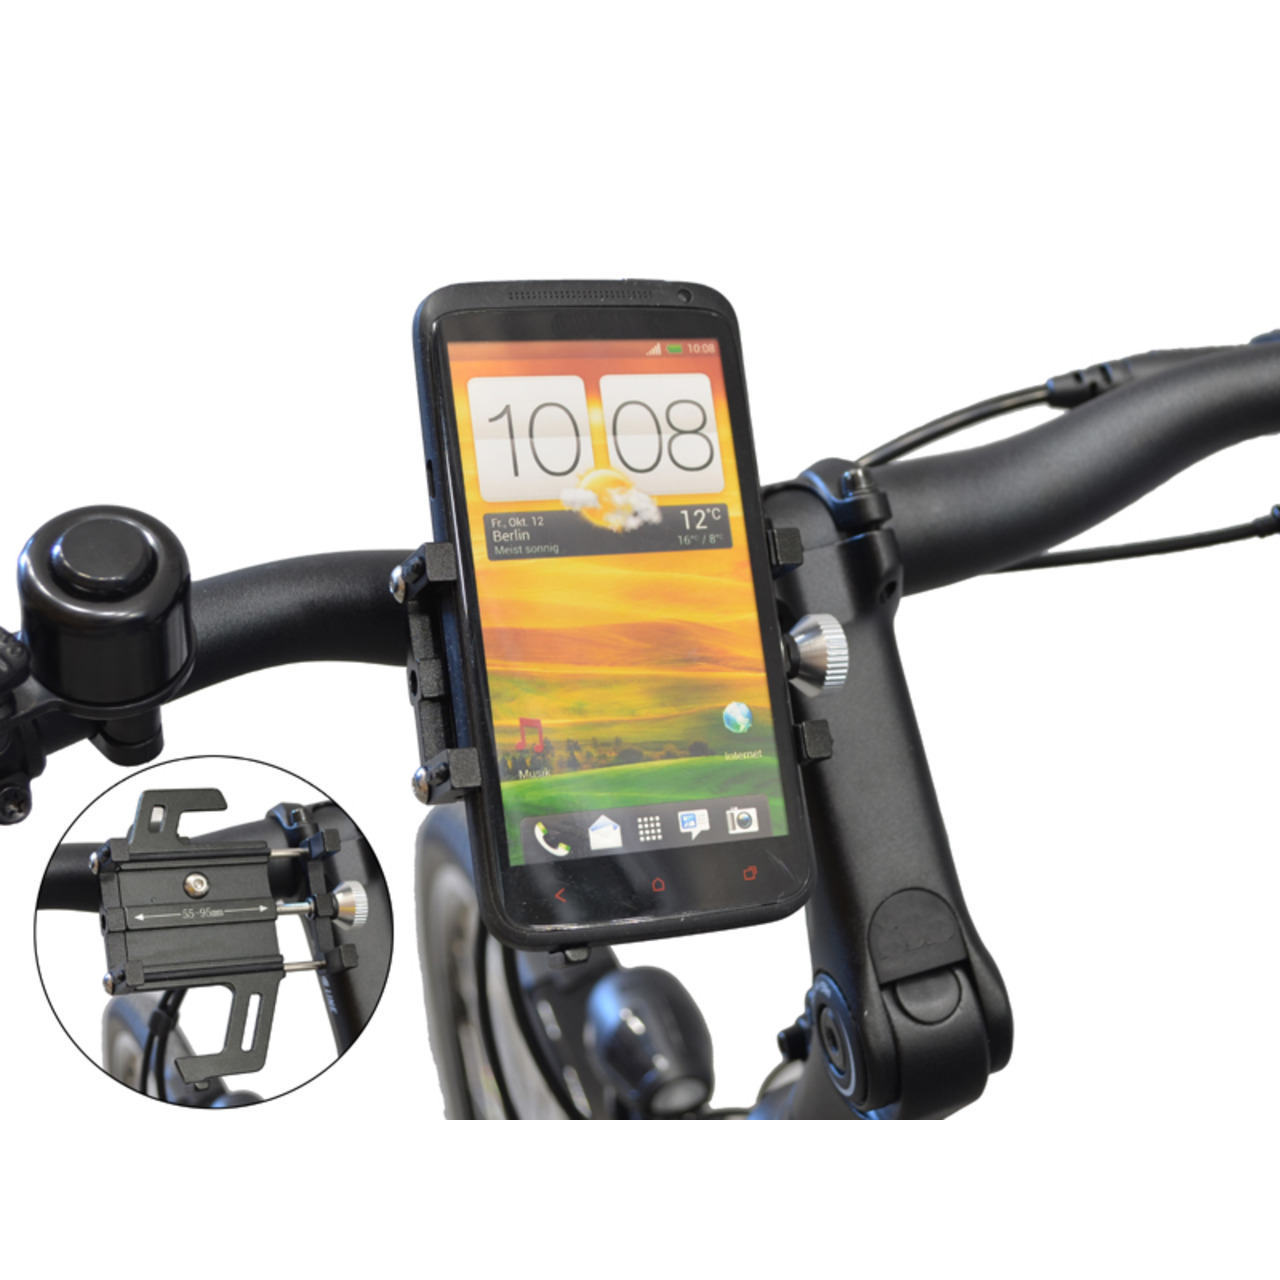 Filmer Fahrrad-Smartphonehalterung 49800- 55 - 95 mm Smartphone-Breite- mit Stossd鋗pfung- Aluminium